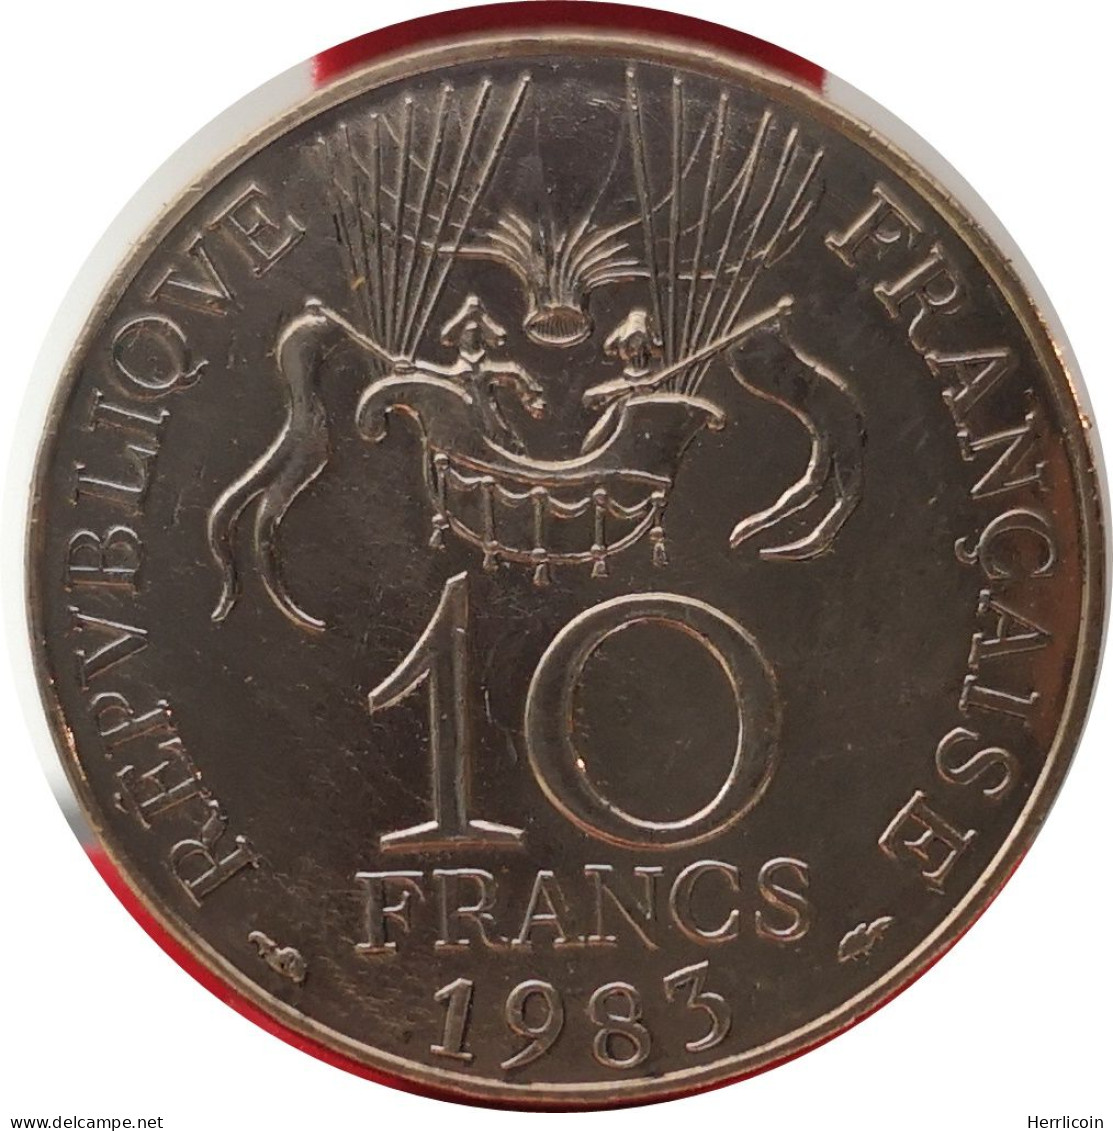 Monnaie France - 1983 Tranche A - 10 Francs Conquête De L'Espace - Gedenkmünzen